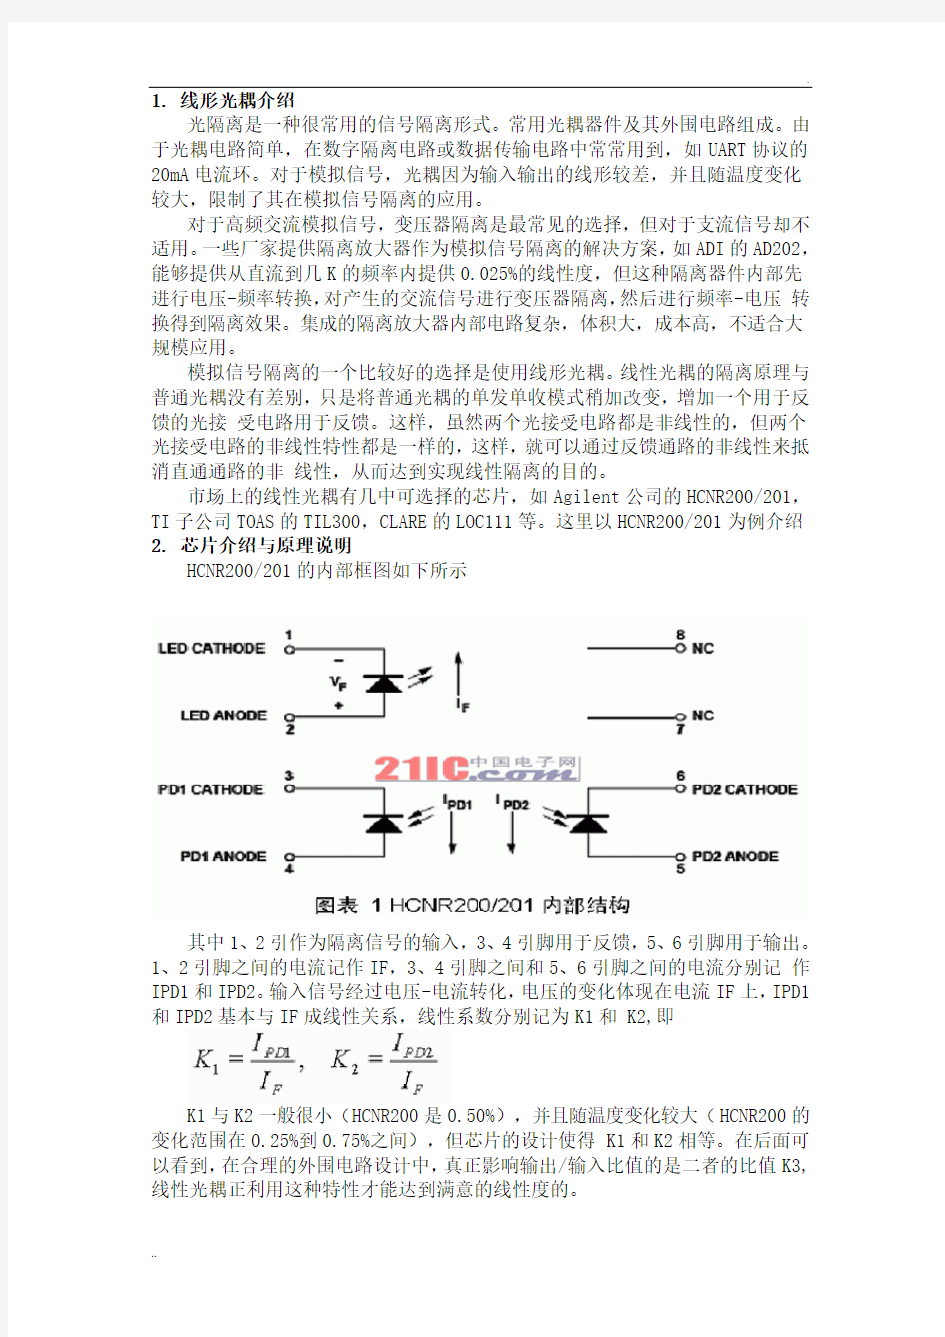 线性光耦原理与电路设计,4-20mA模拟量隔离模块,PLC采集应用